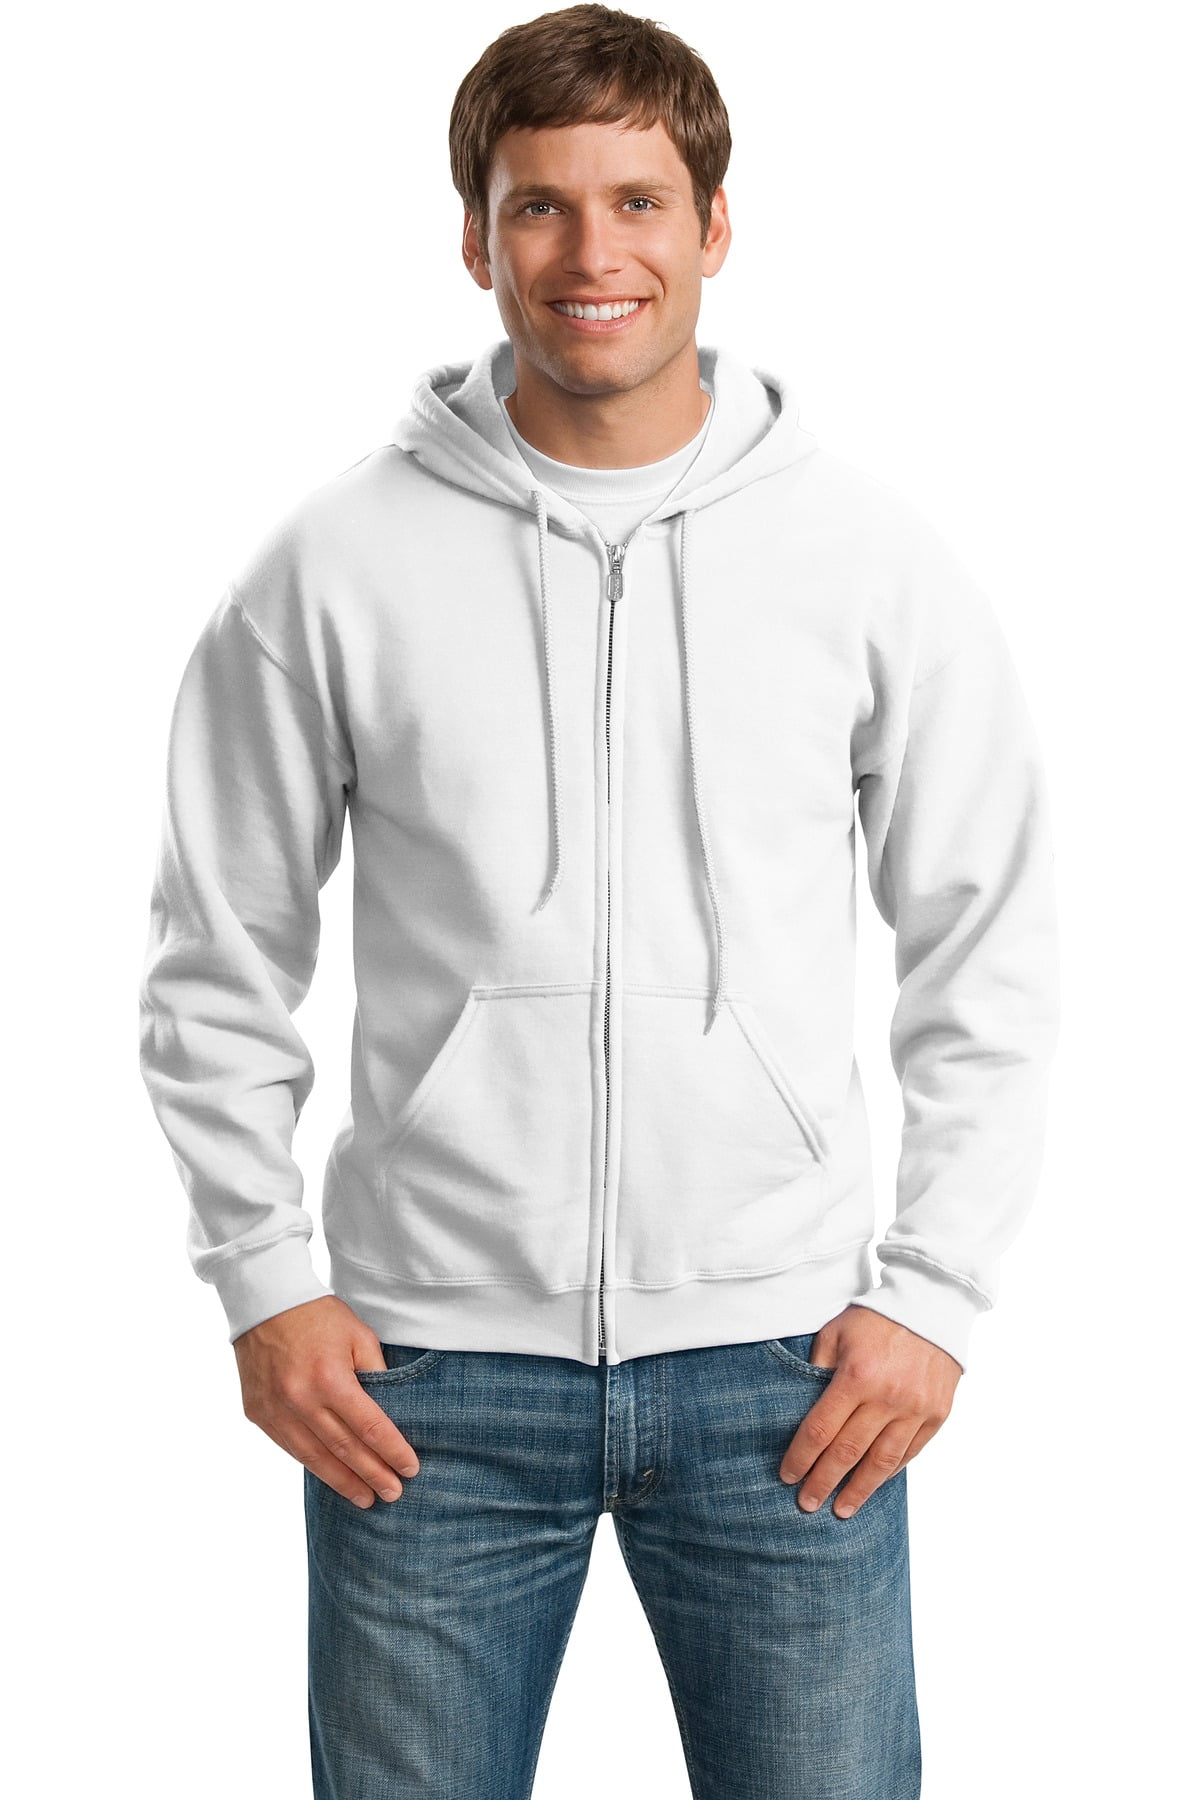 Hooded Sweatshirt Men's Adult Blank Hoodie Heavy Blend 8 oz White 